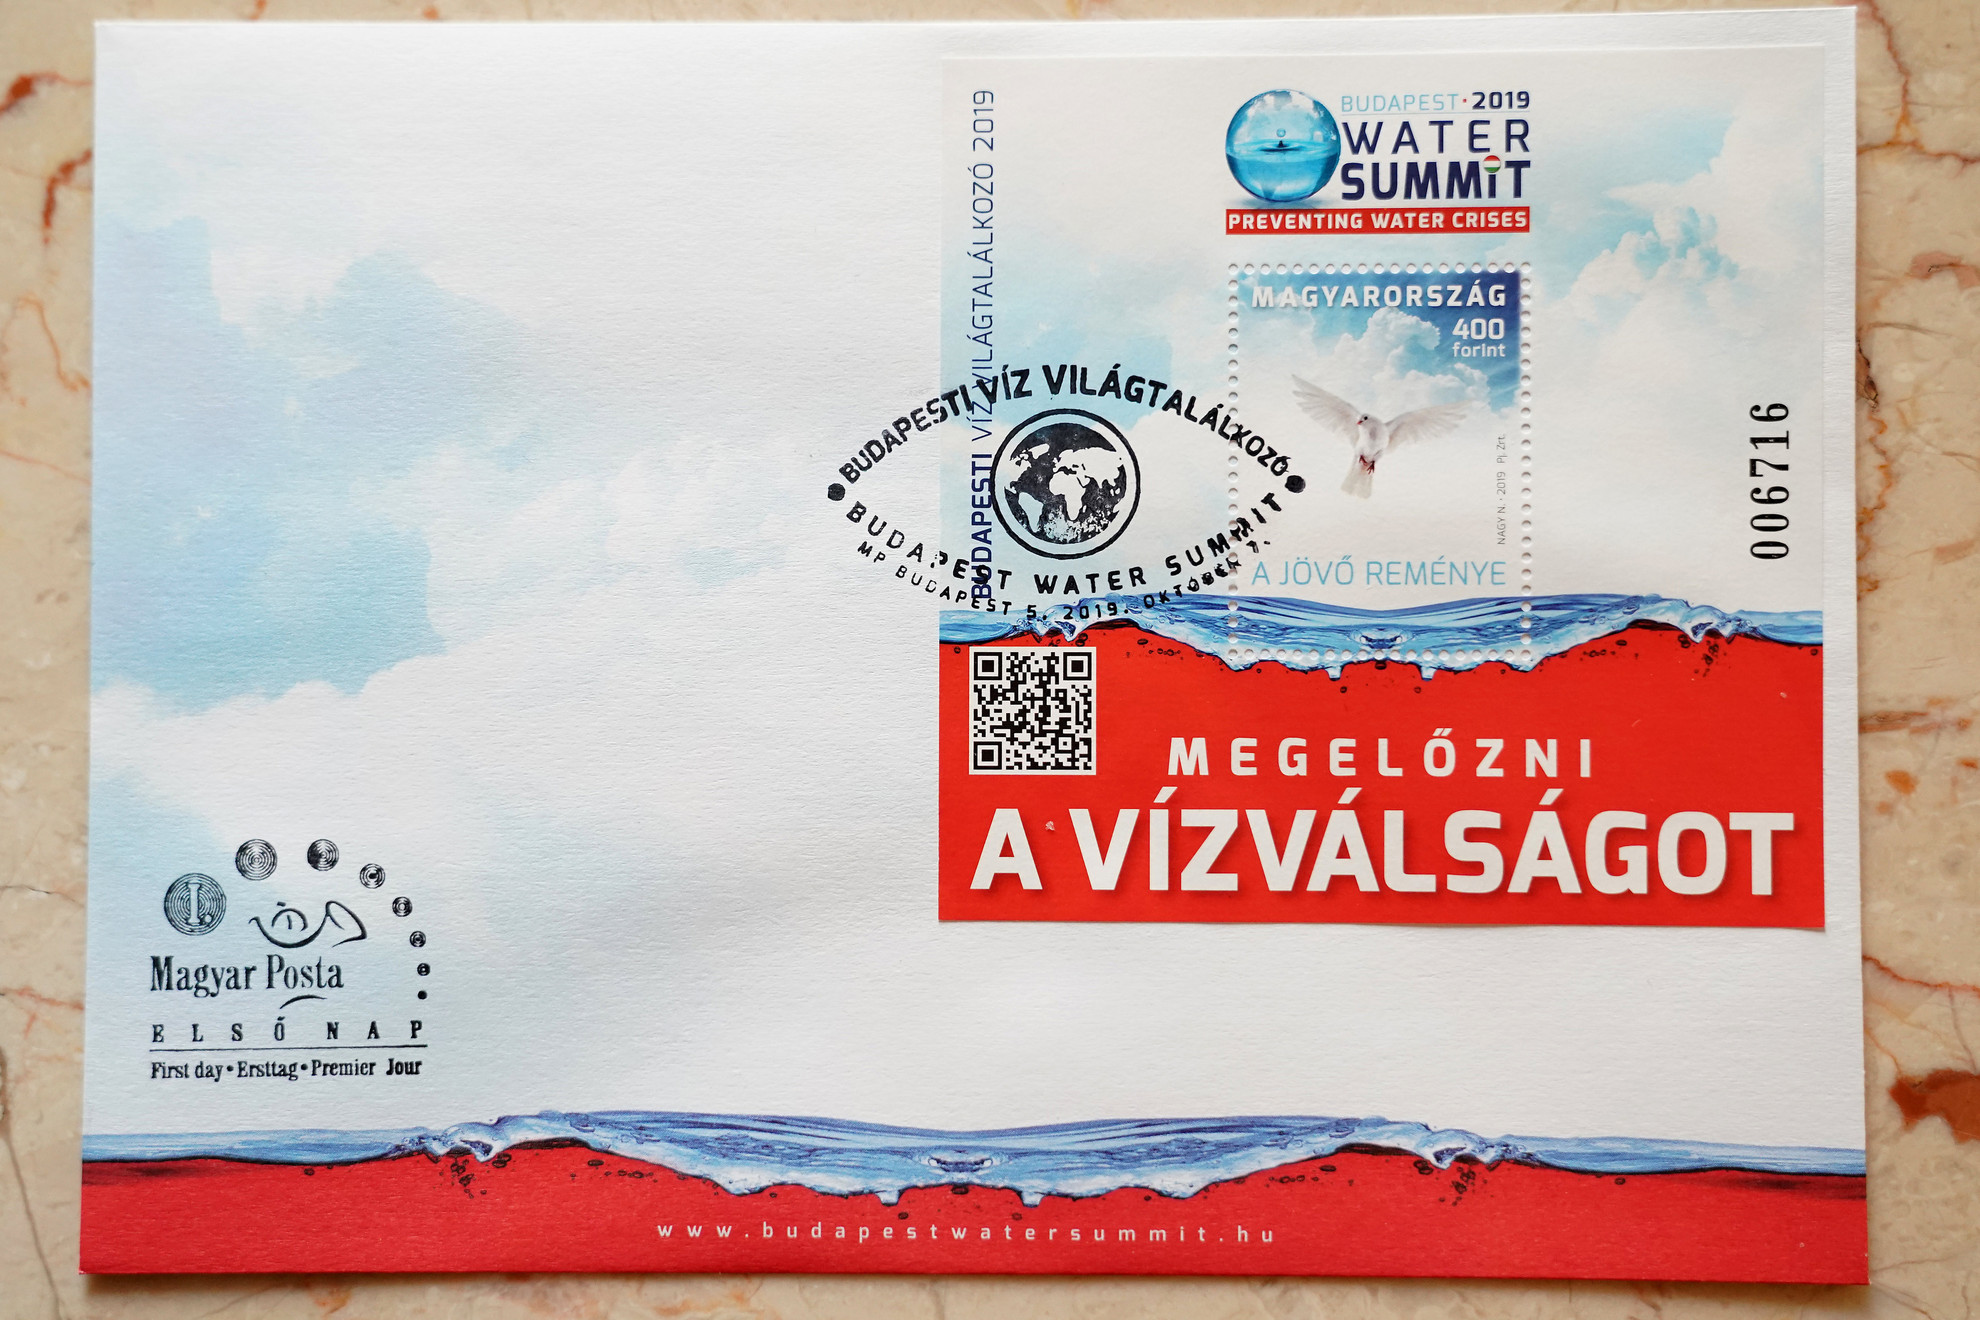 A Magyar Posta Budapesti Víz Világtalálkozó alkalmából kibocsátott bélyegkisíve